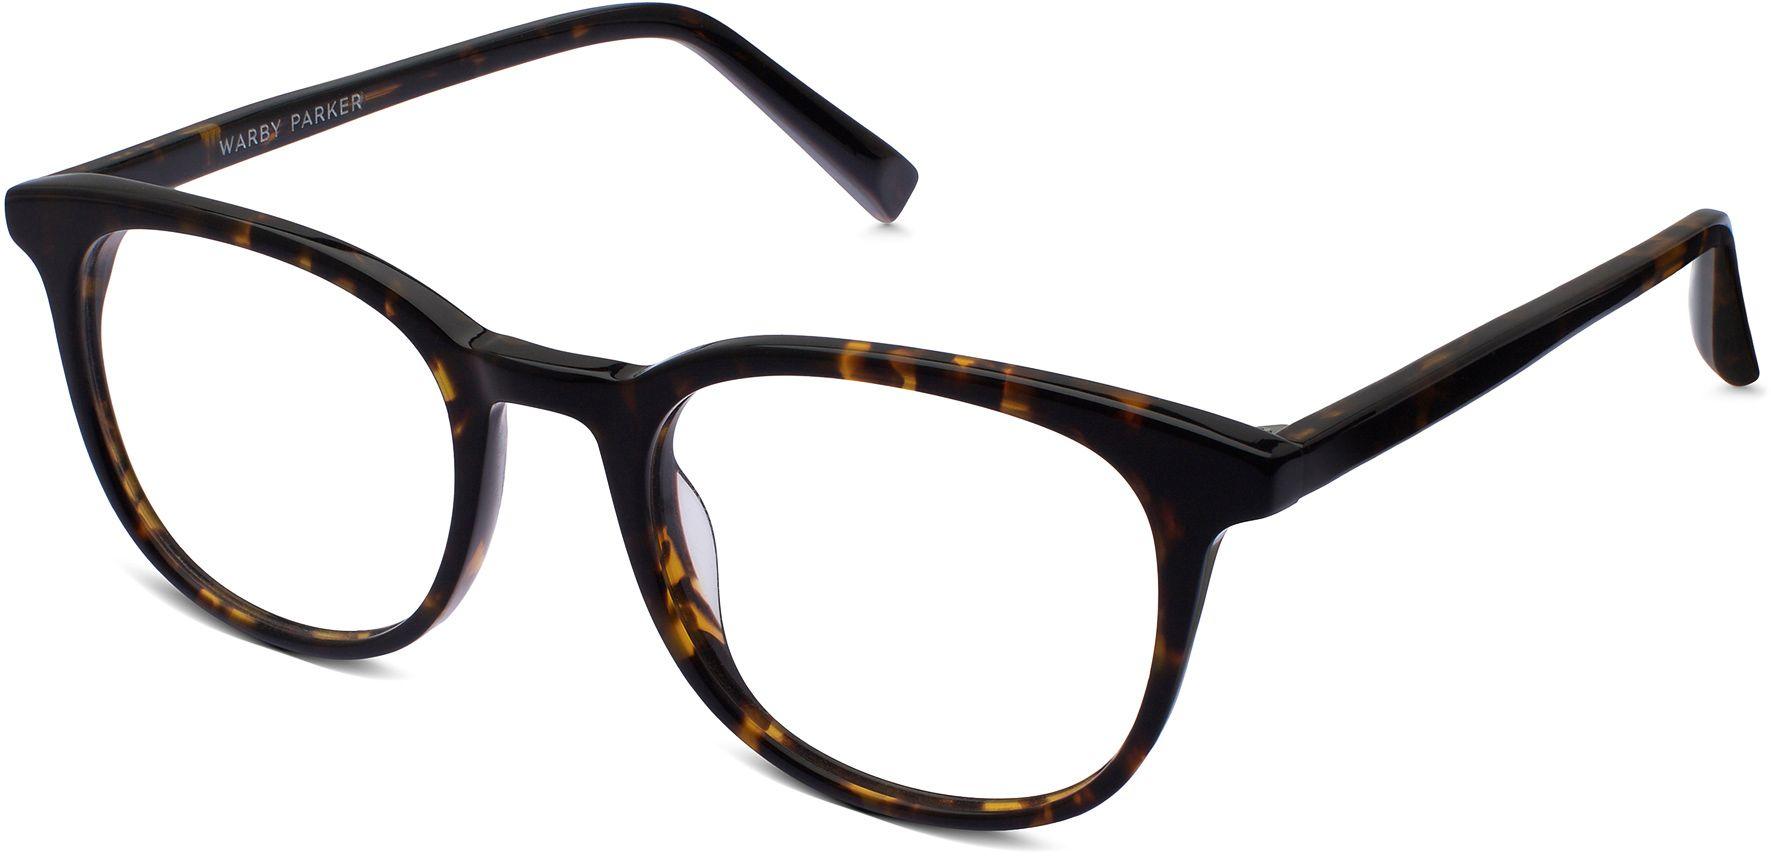 Warby Parker Logo - Durand Eyeglasses in Whiskey Tortoise for Men